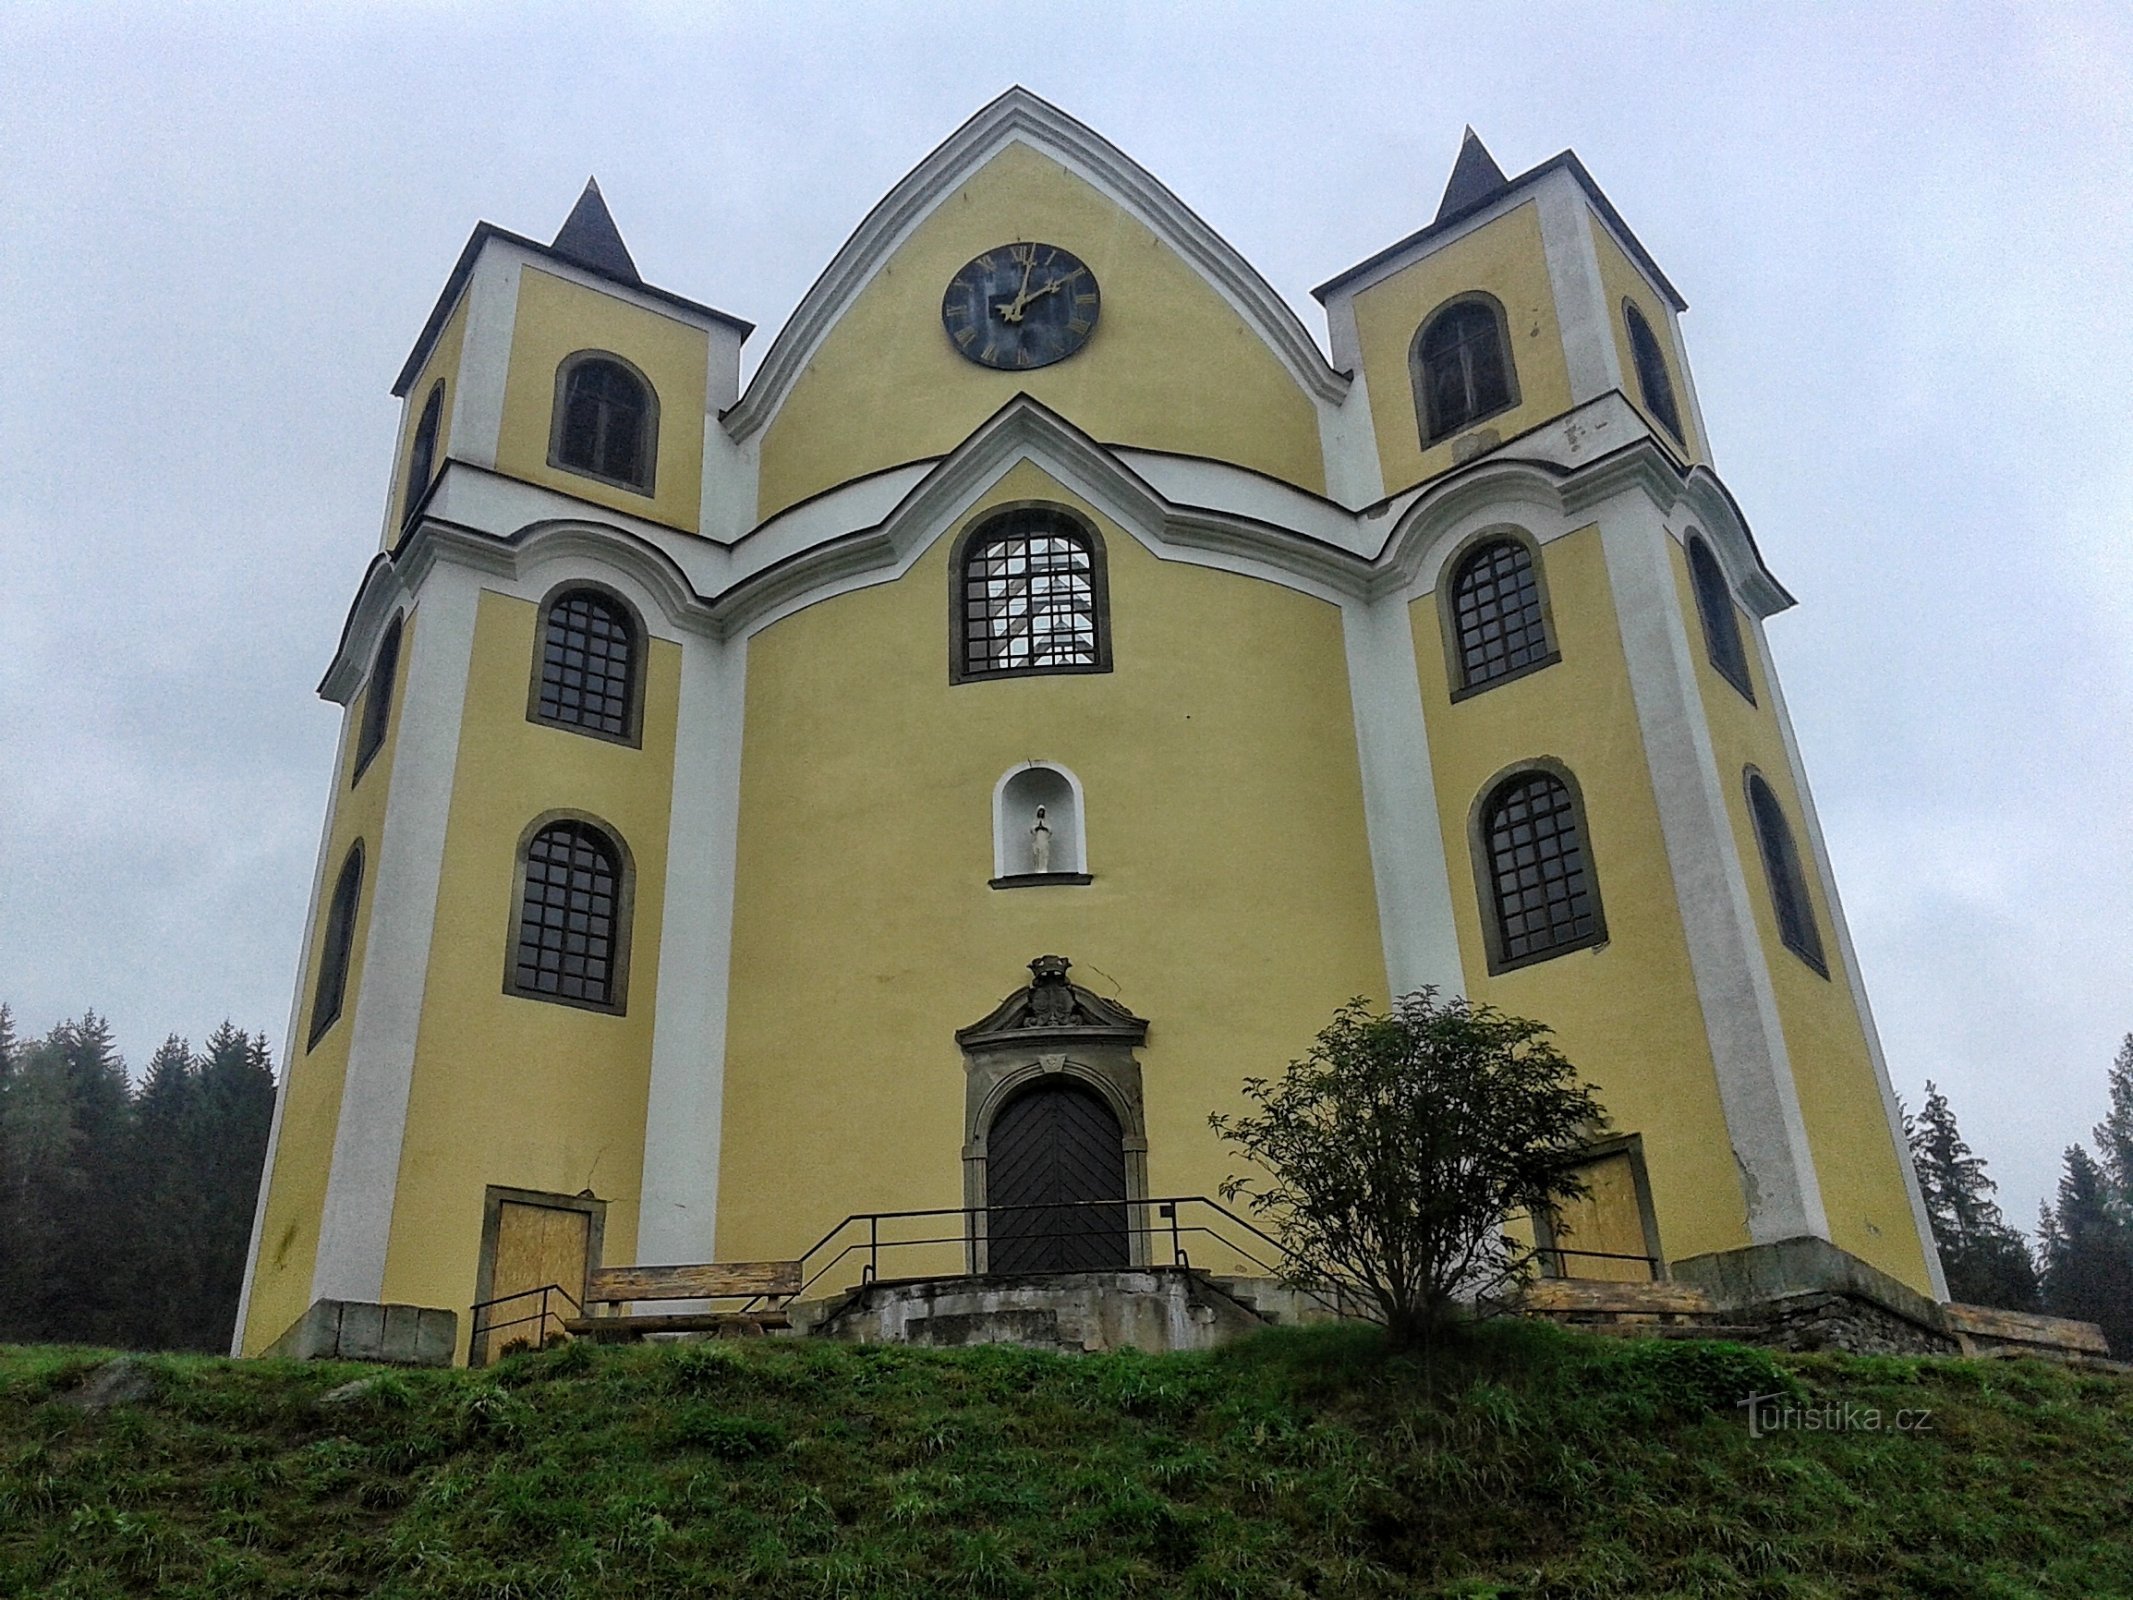 De voorkant van de kerk